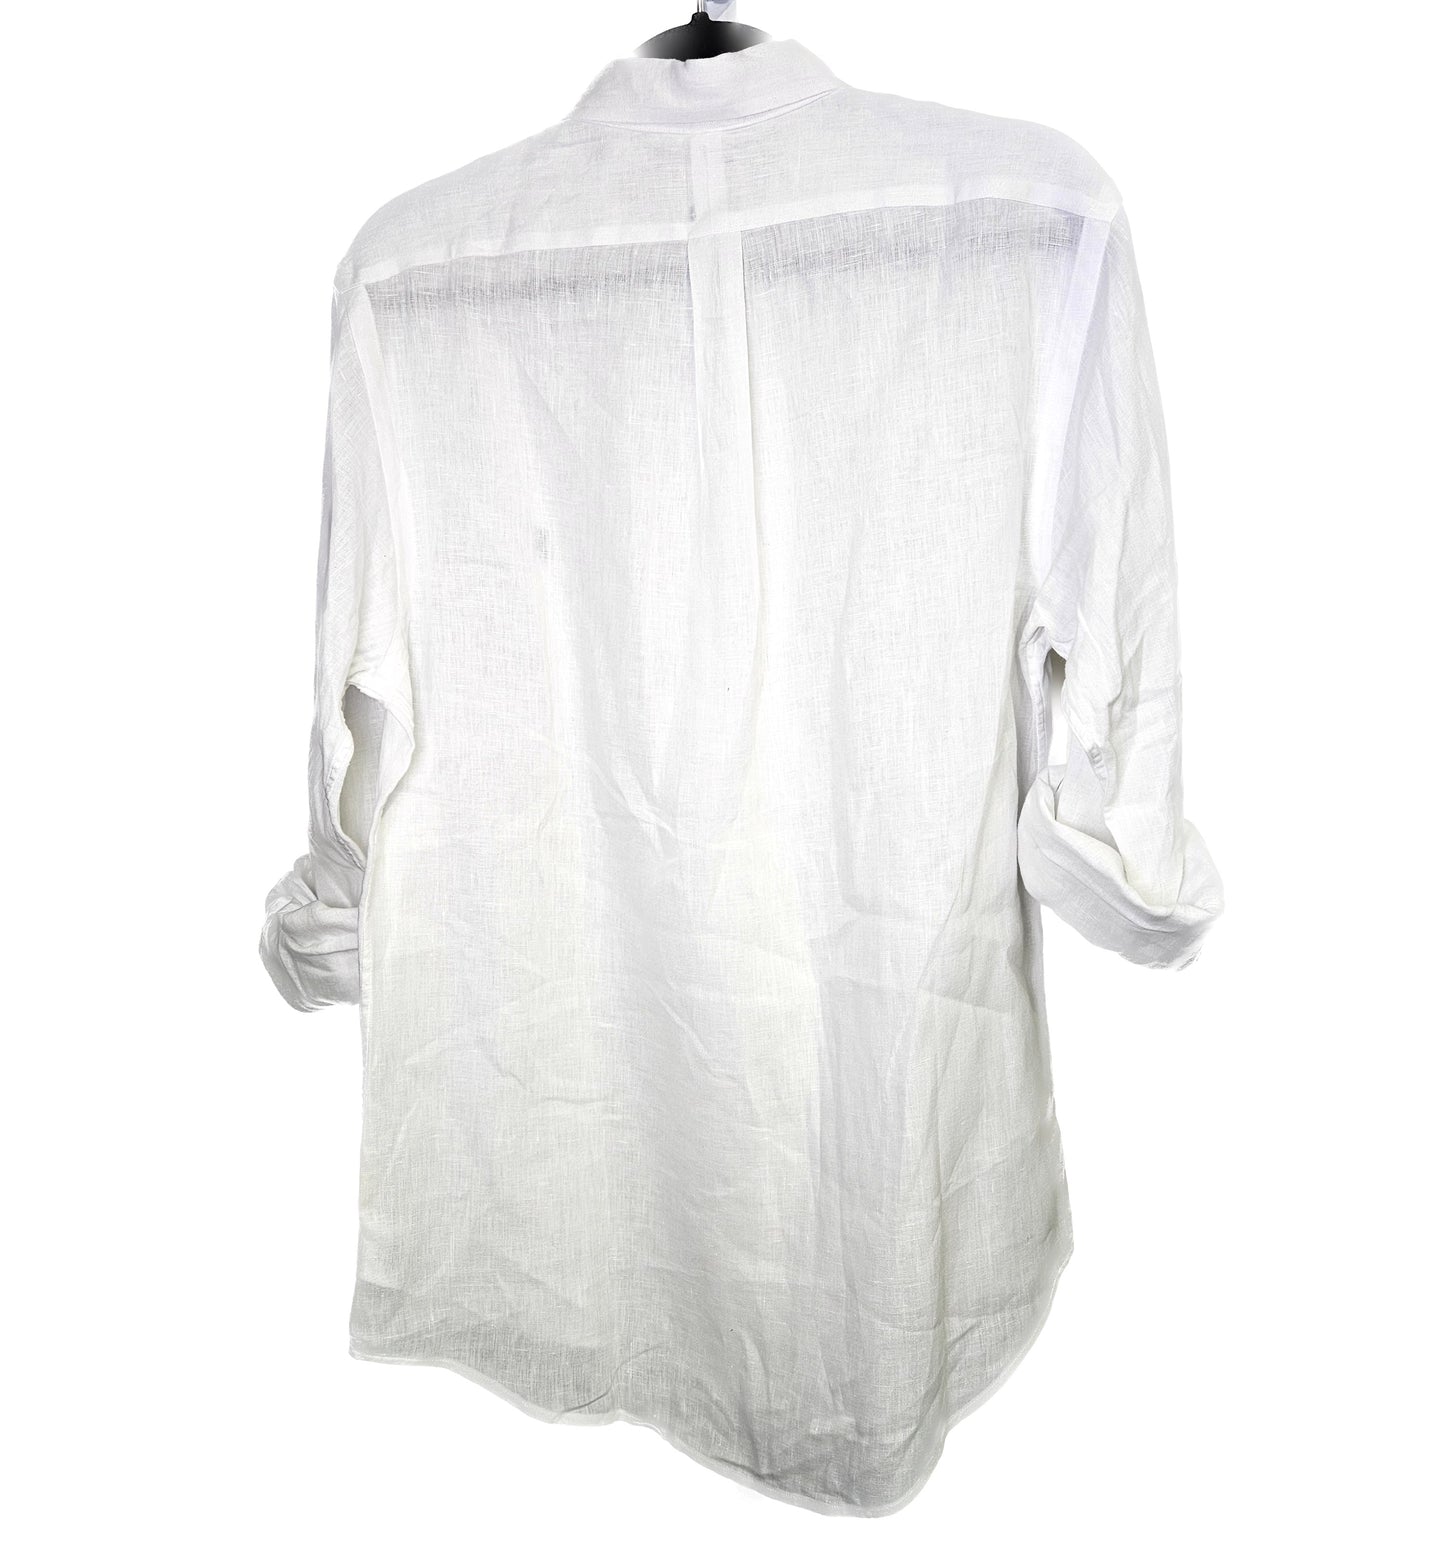 Ralph Lauren White Linen Shirt